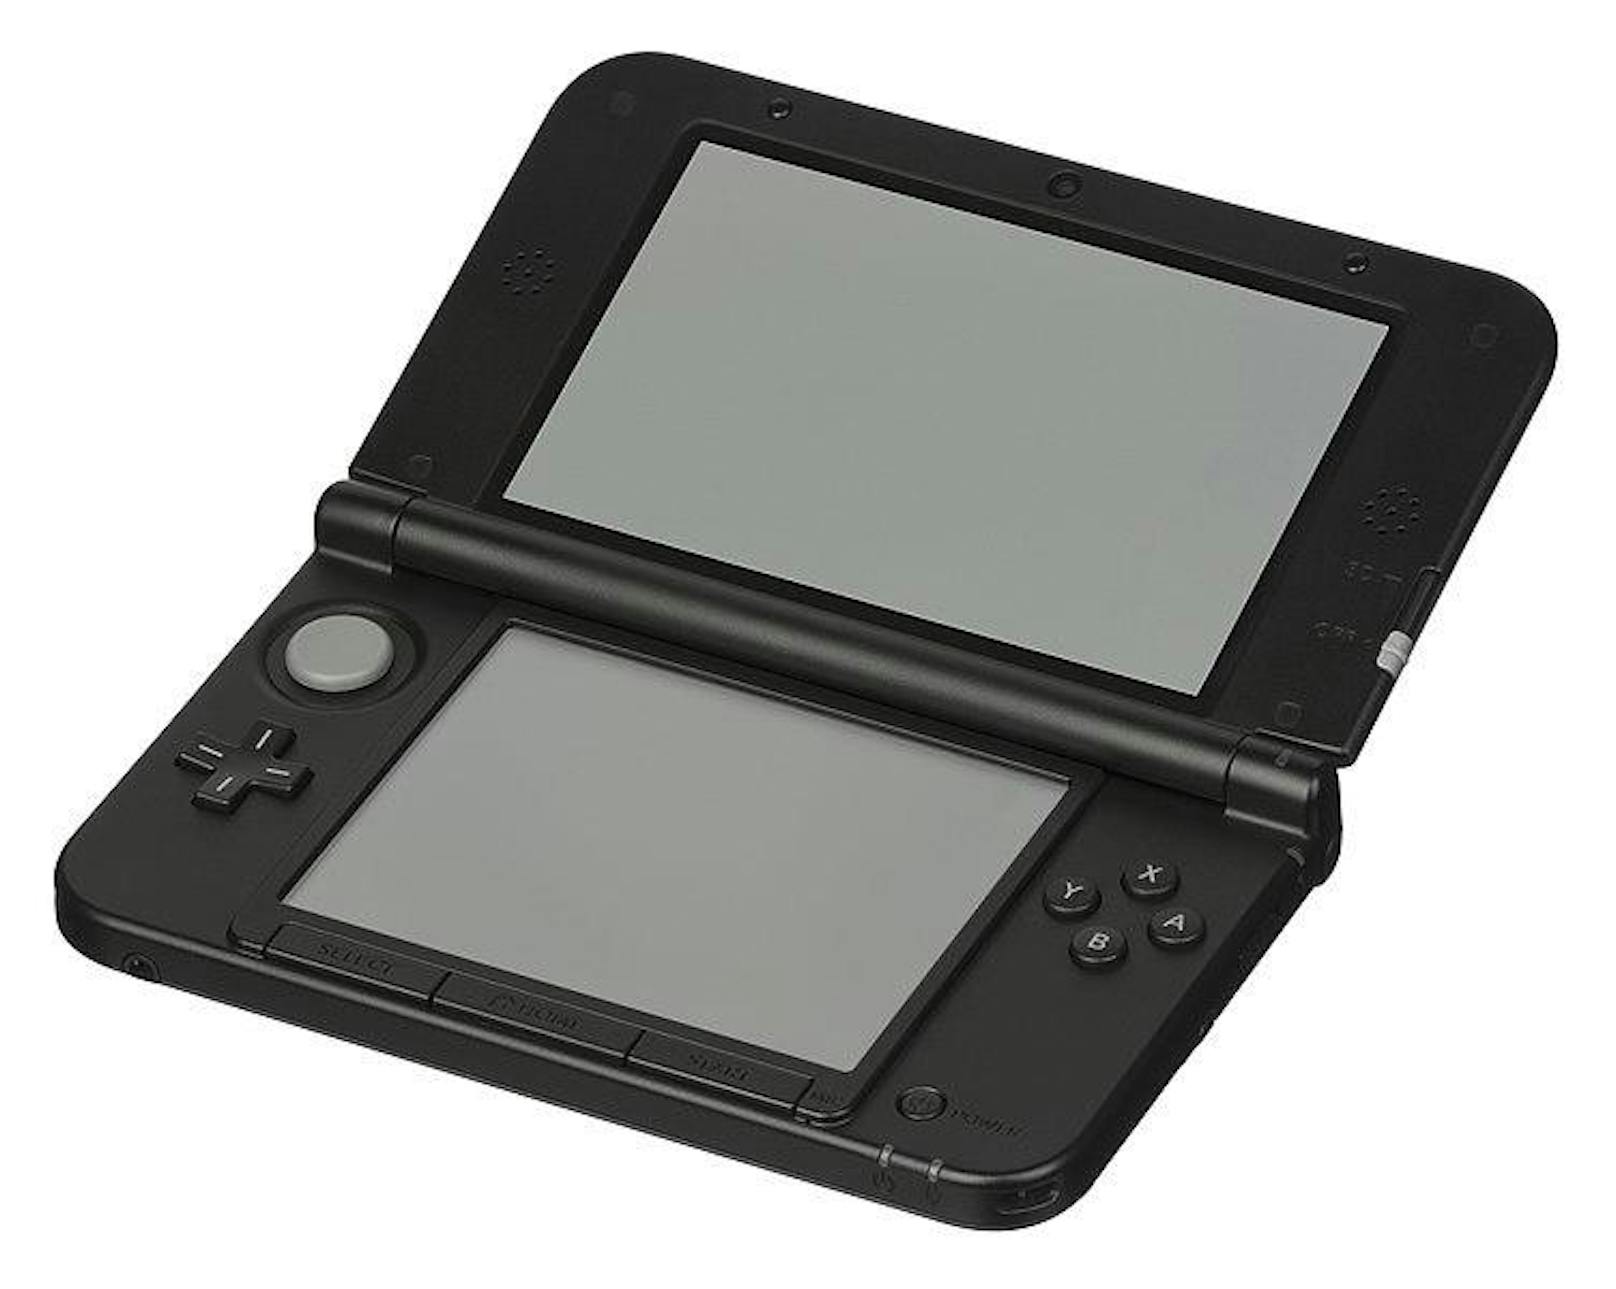 Der Nintedo 3DS baute am Erfolg des Vorgängers auf und konnte mit seinem 3D-Effekt einzigartige Grafiken darstellen.